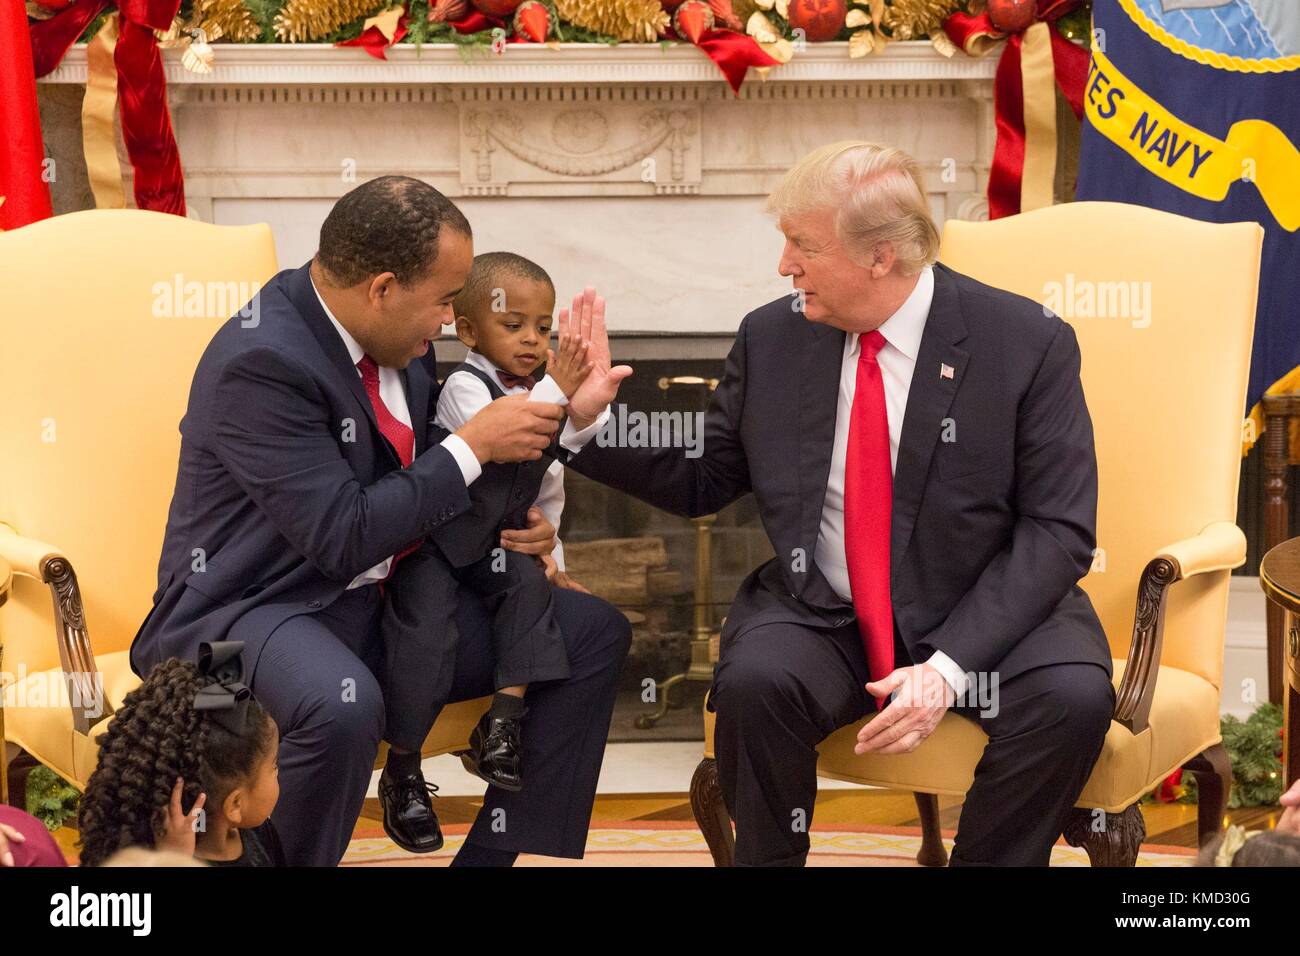 Il presidente statunitense Donald Trump dà un elevato danno a un piccolo ragazzo durante un contribuente evento familiare nell'ufficio ovale della casa bianca il 5 dicembre 2017 a Washington, DC. Foto Stock